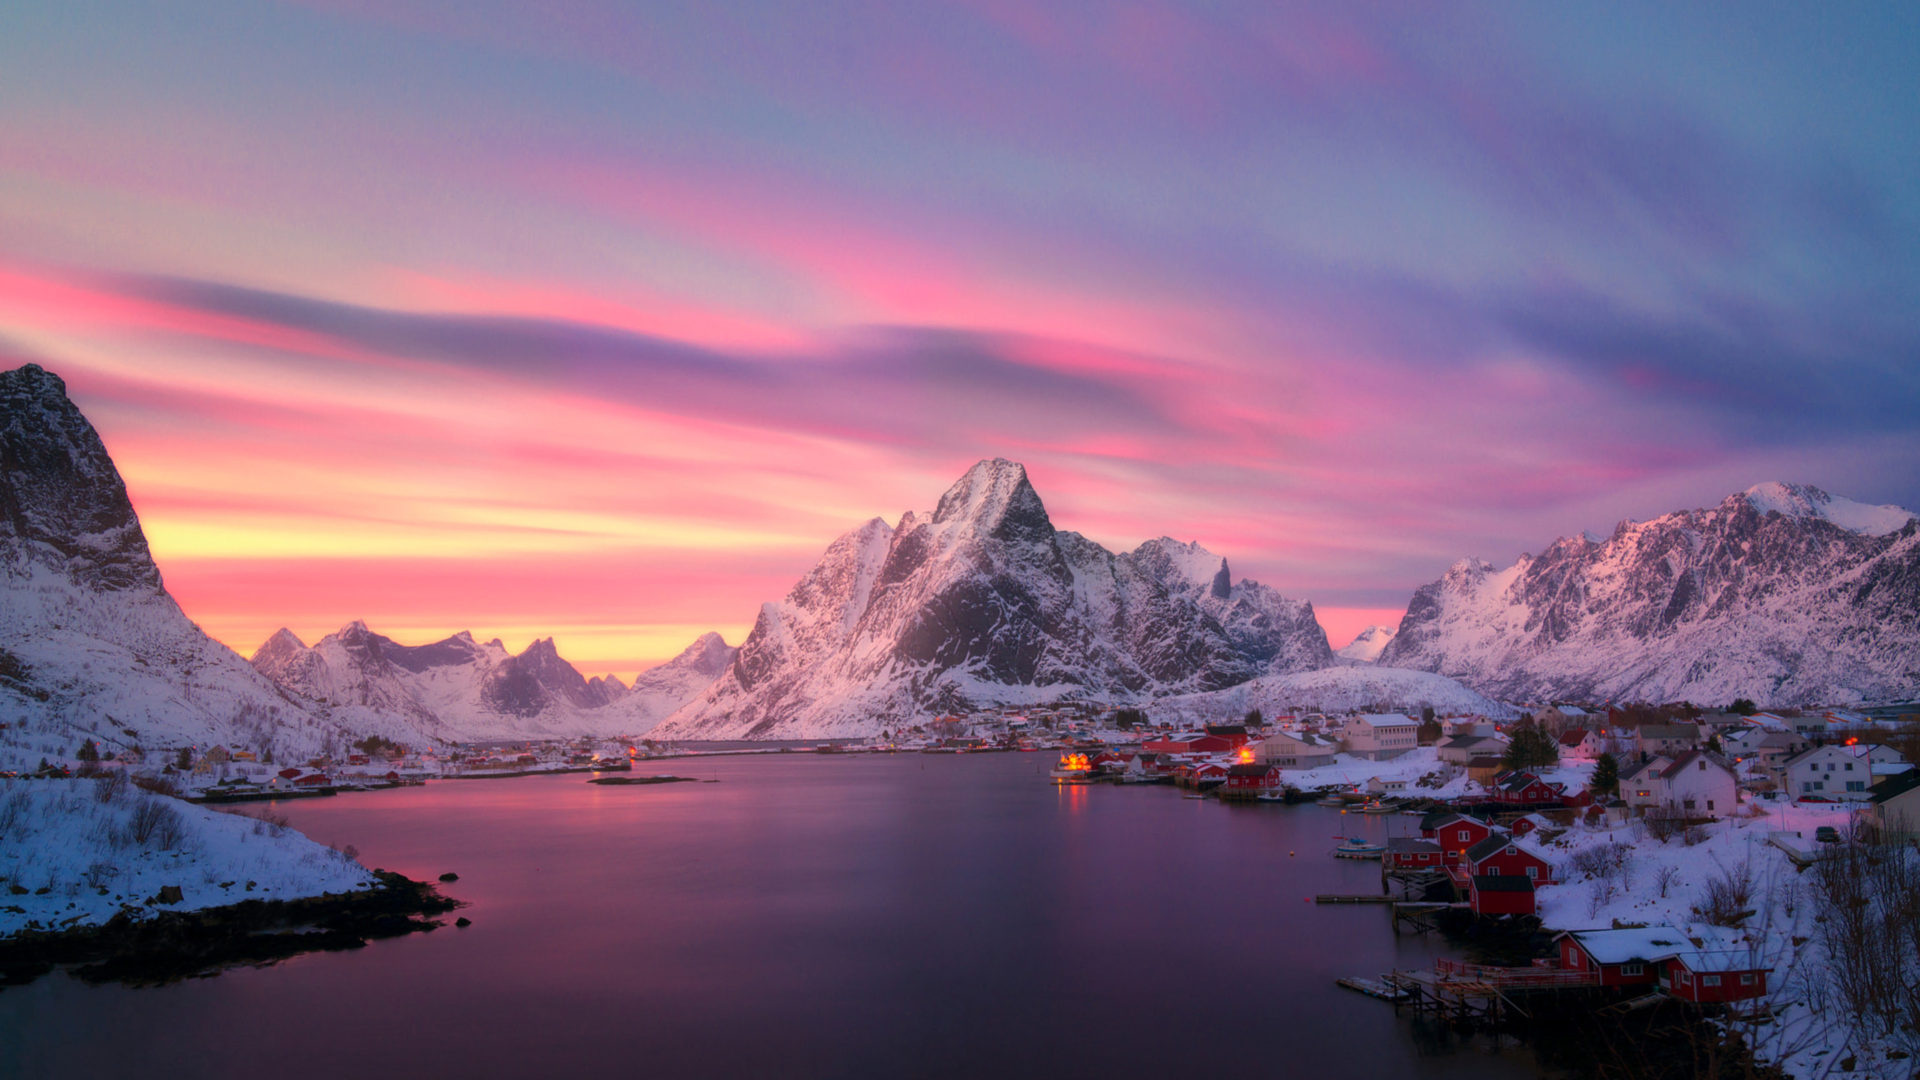 Lofoten fishing village, Dusk ambiance, Norway's beauty, Tranquil waters, 1920x1080 Full HD Desktop